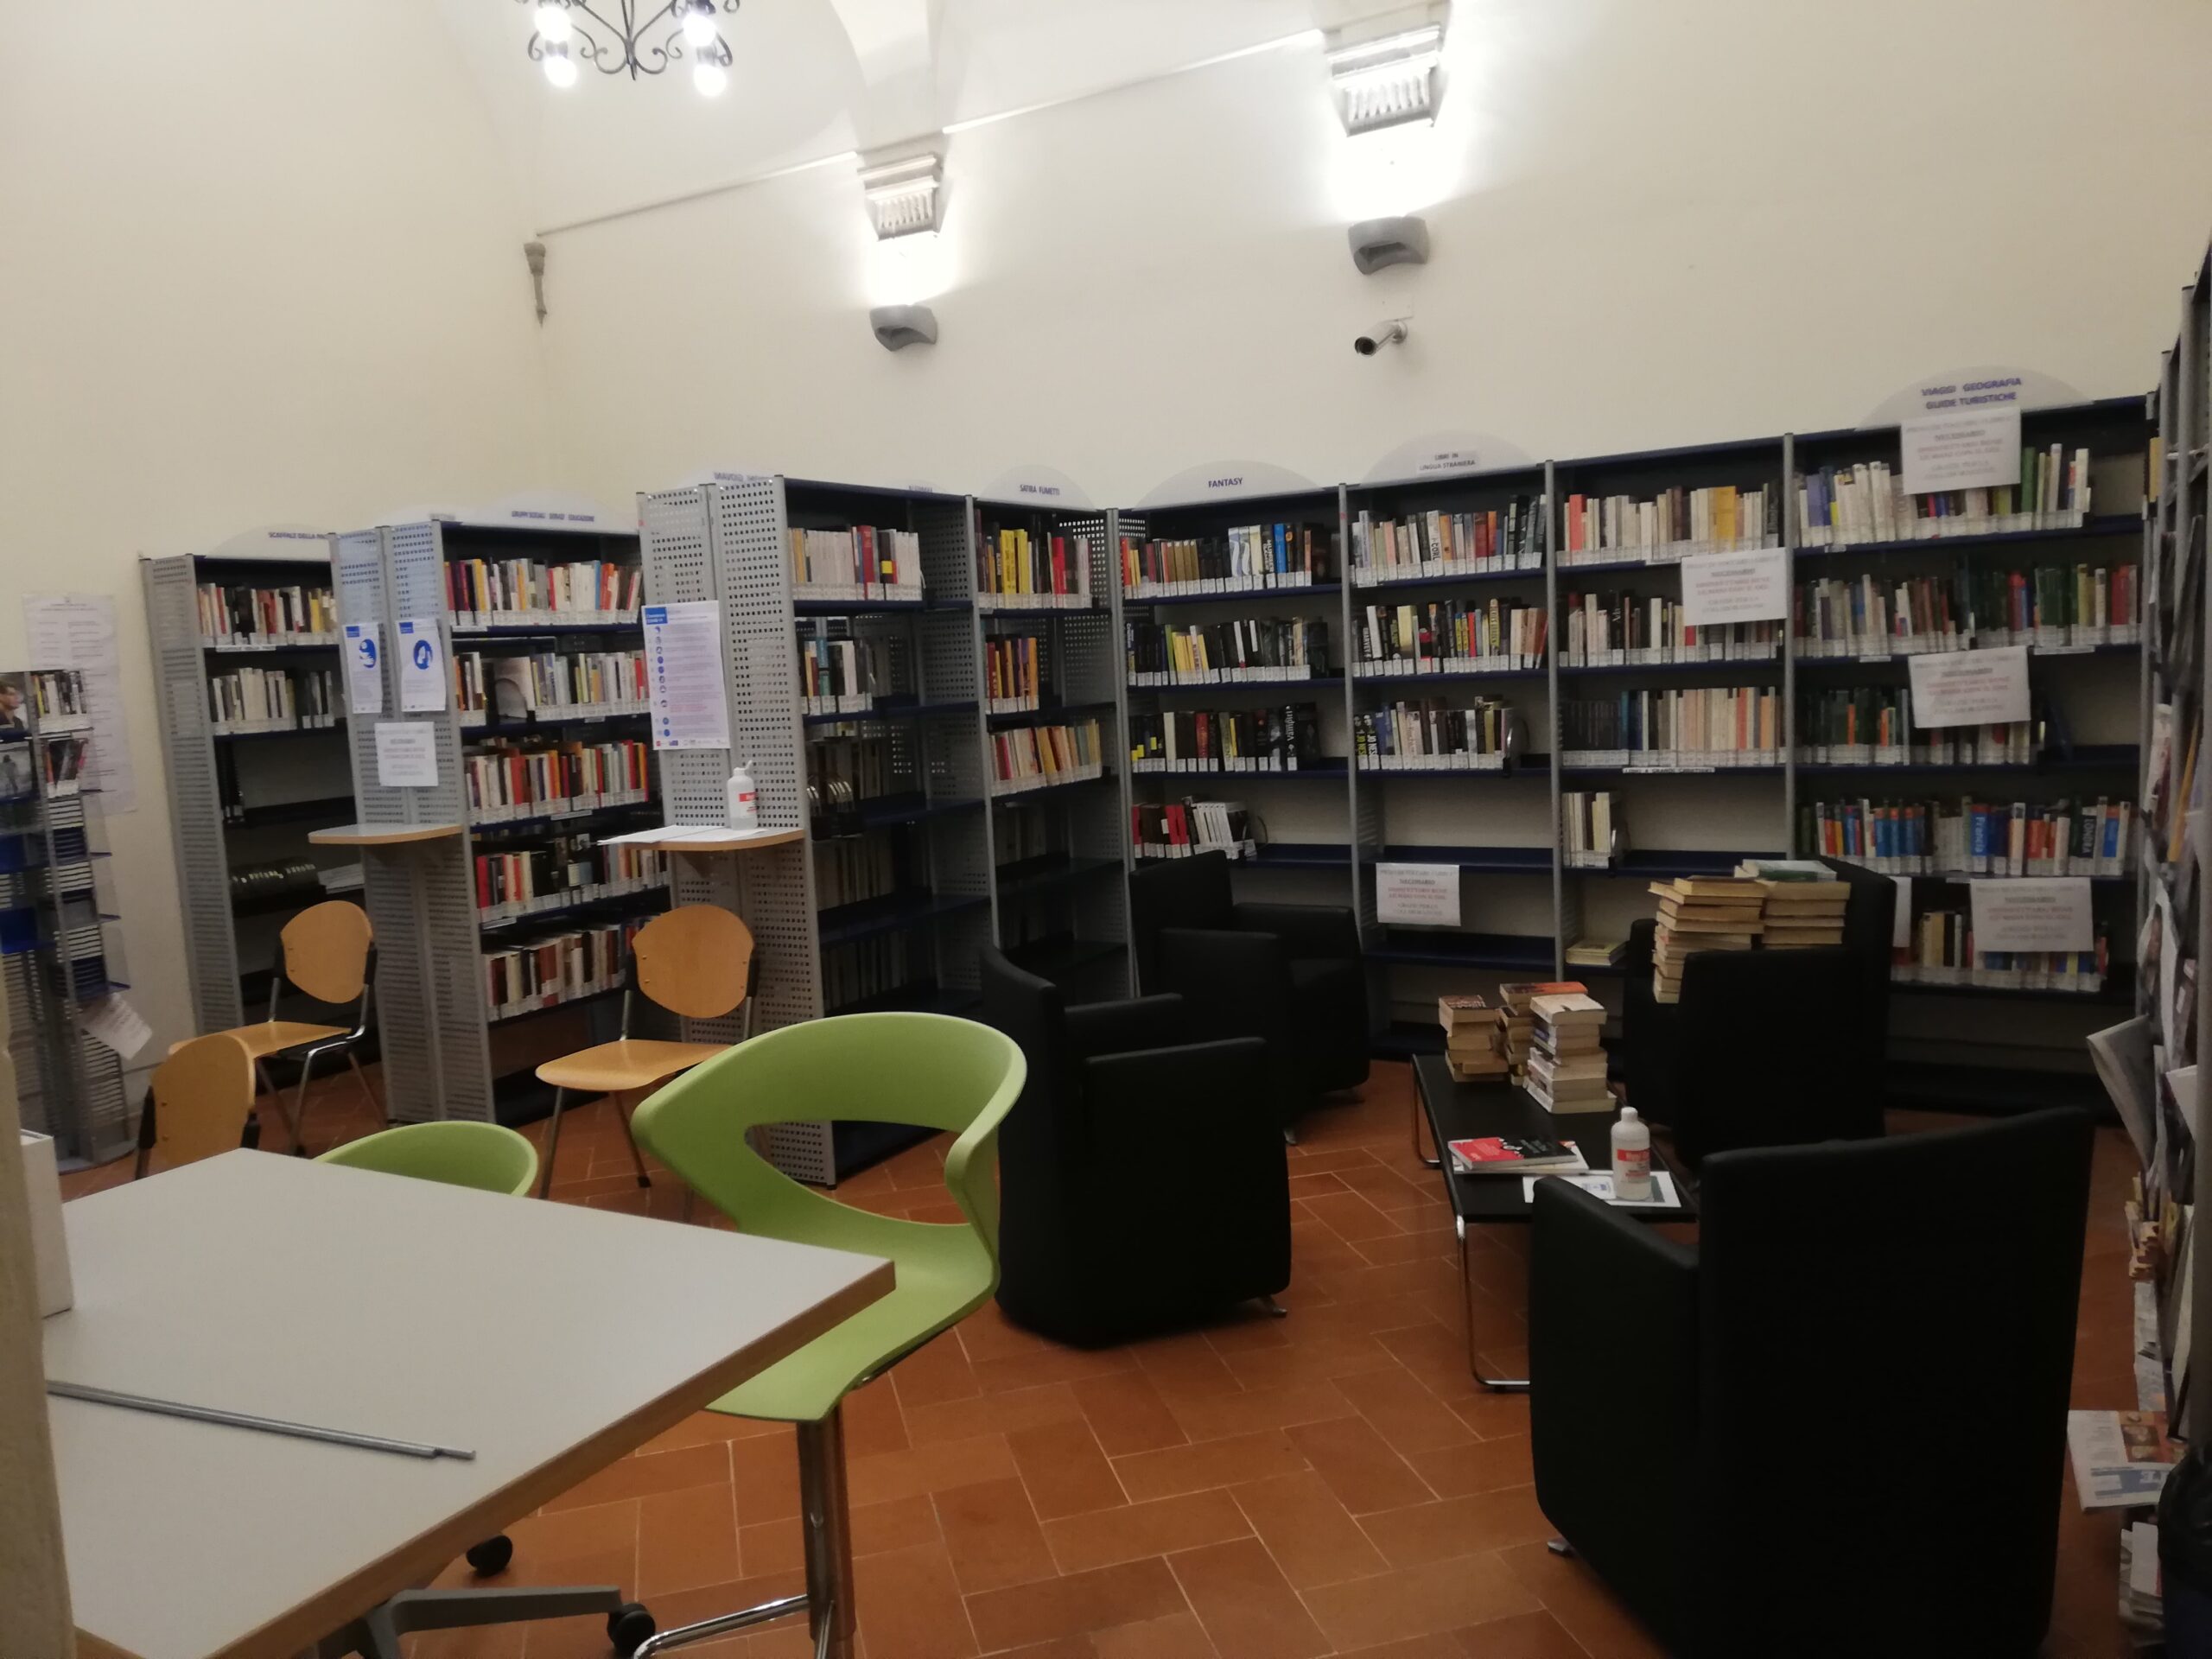 Nuovi libri per 10 mila euro, la biblioteca non si ferma